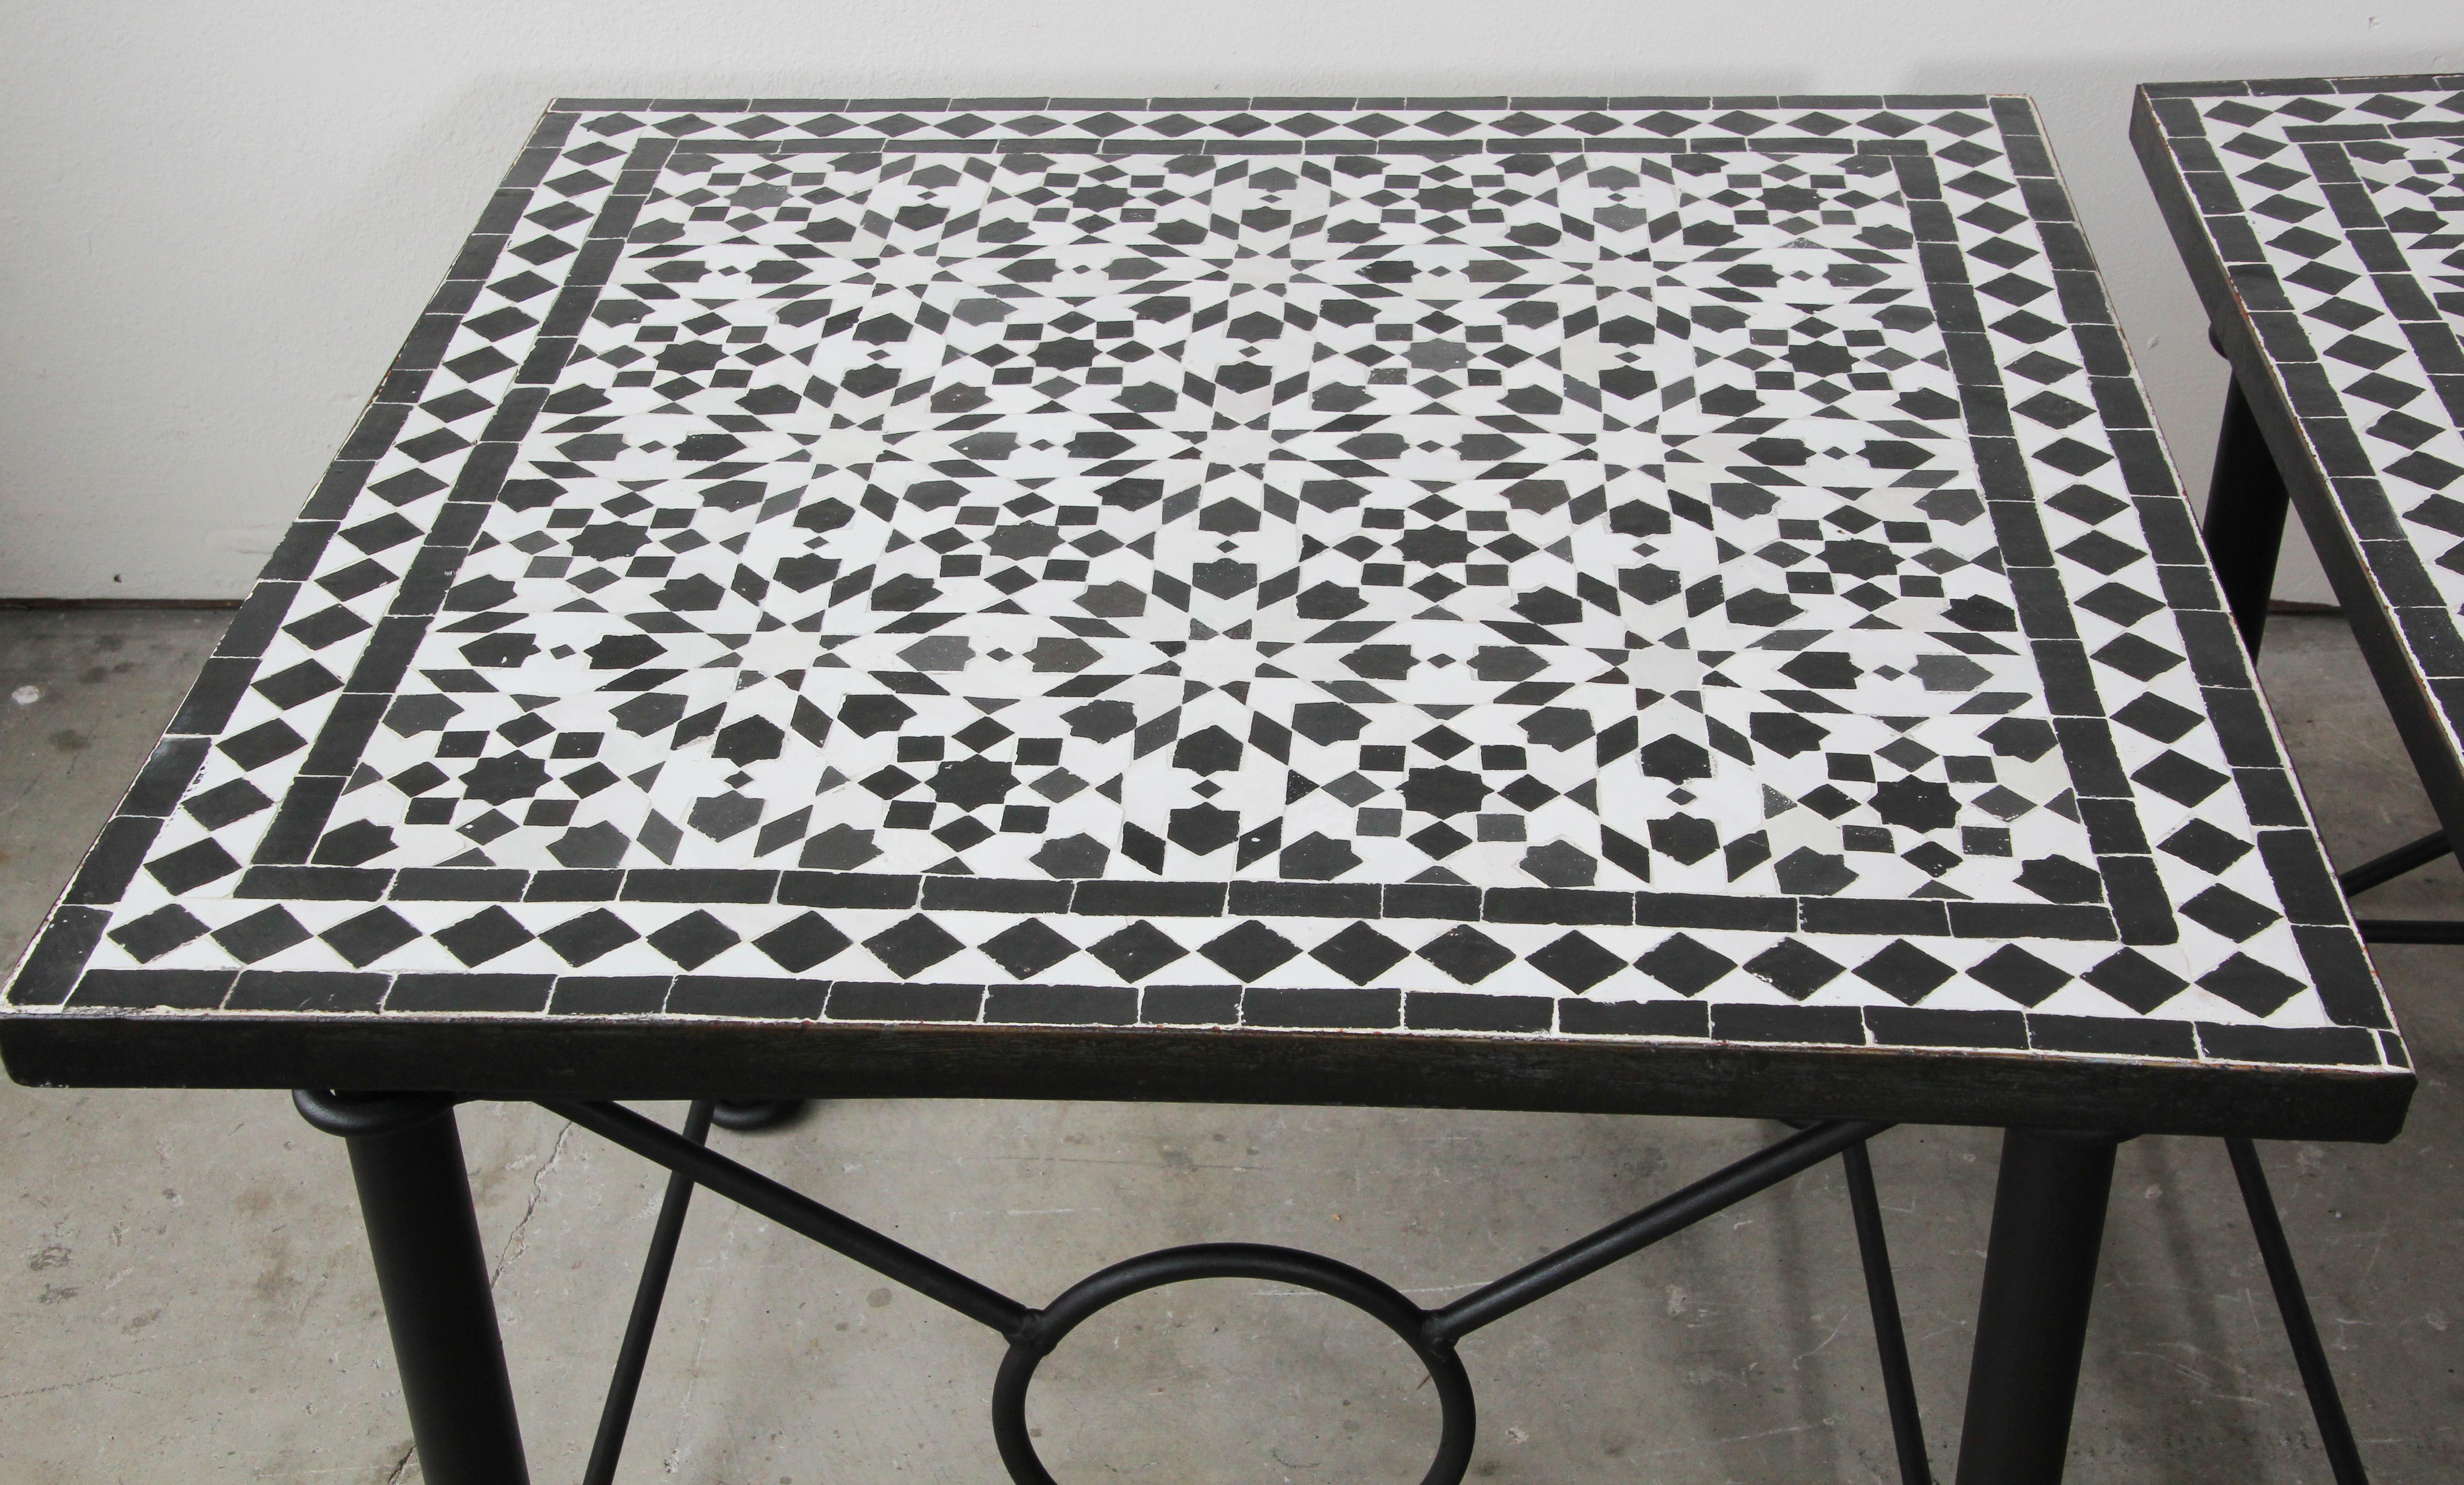 Table d'appoint en mosaïque marocaine de carreaux de Fez sur base en fer.
Fabriqué à la main par des artisans experts à Fès, au Maroc, à l'aide de vieux carreaux émaillés noirs et blancs récupérés et incrustés dans le béton et réalisant de